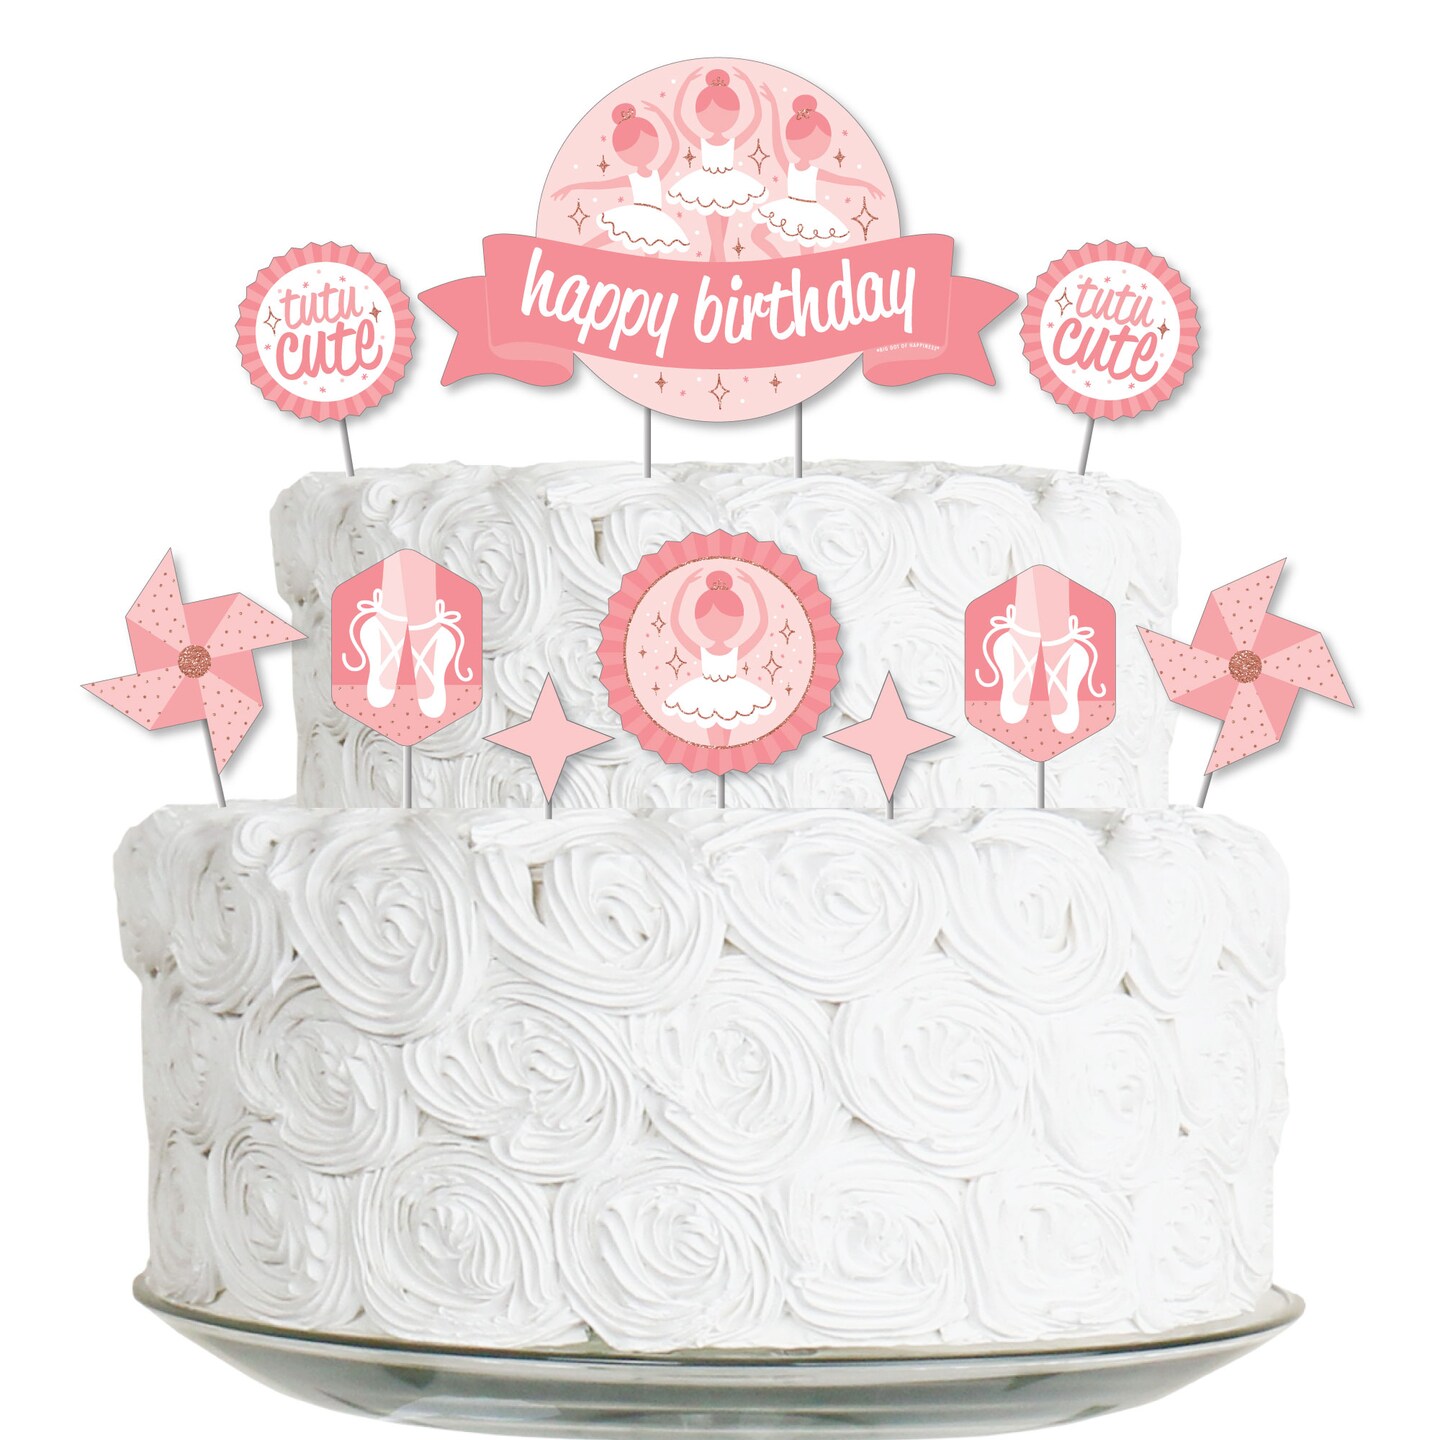 24th Birthday Cake | Victoria Barnett | Flickr